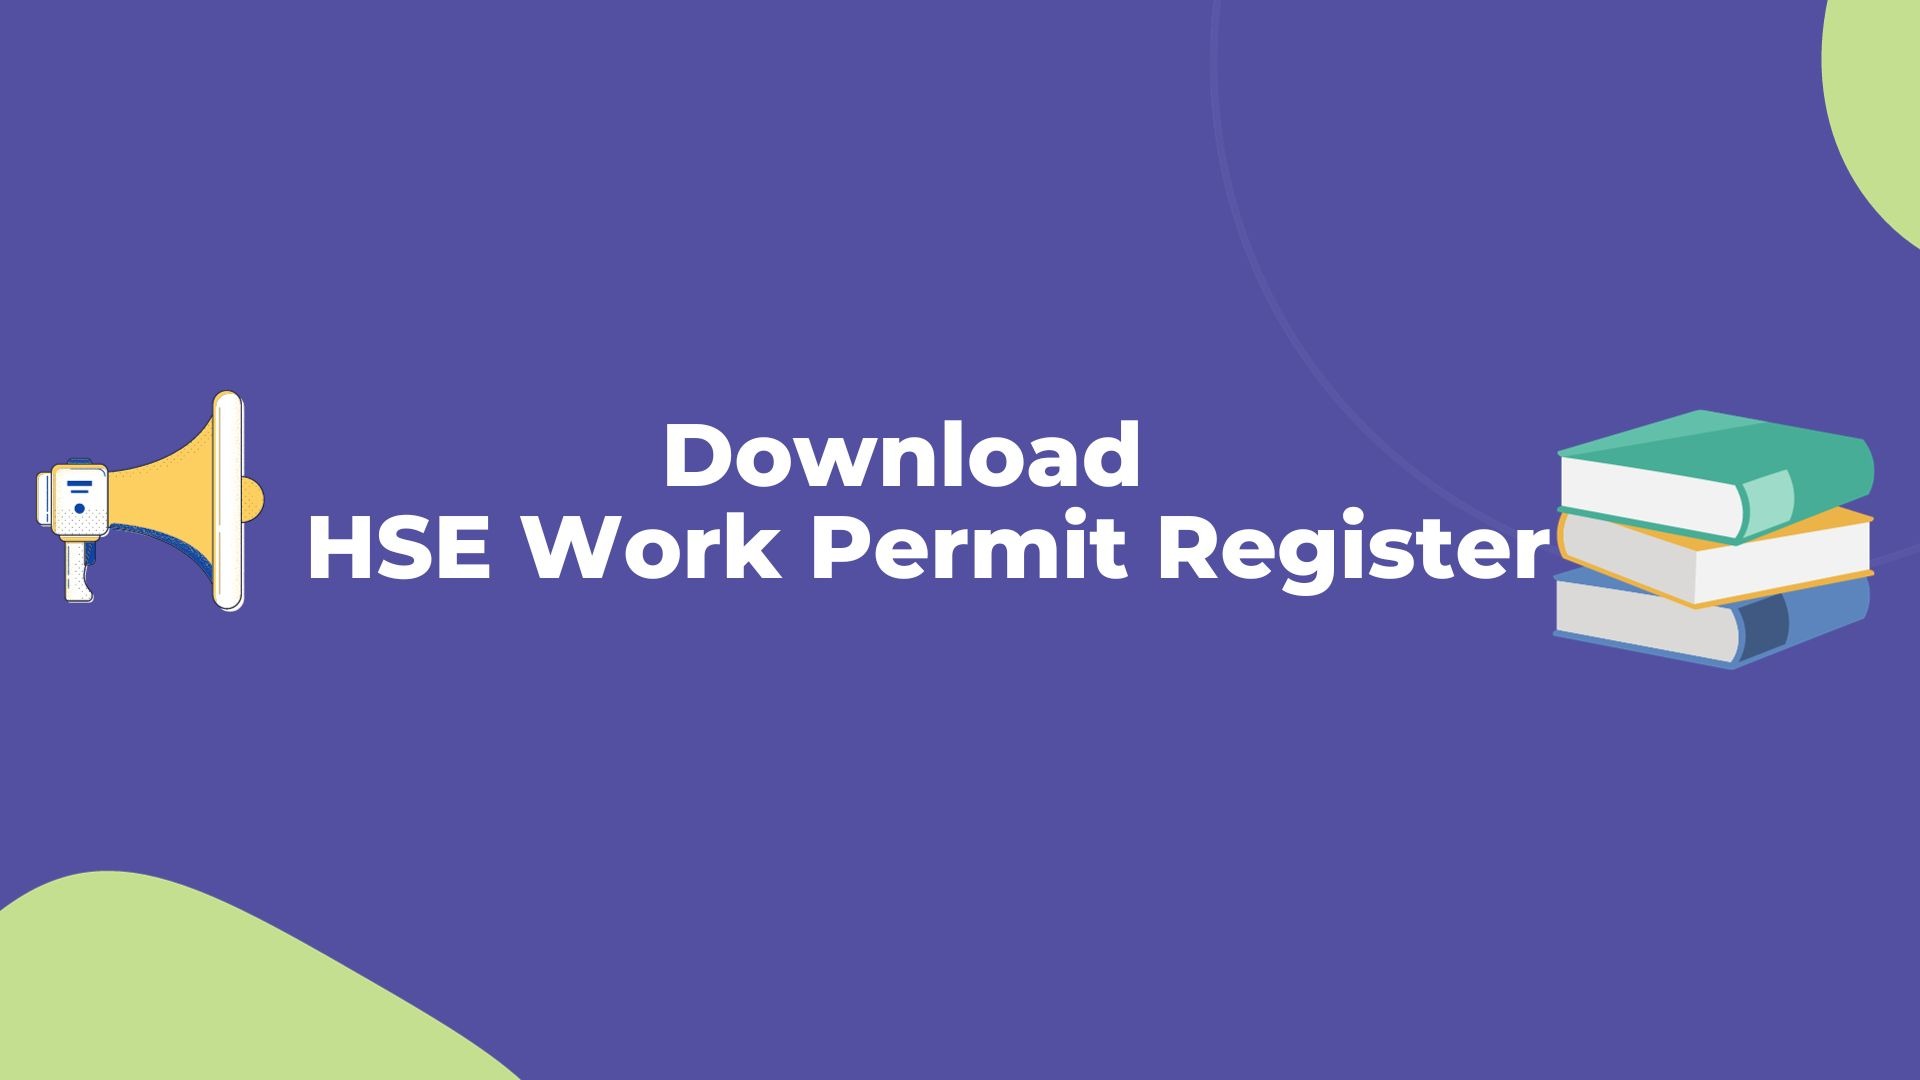 HSE Work Permit Register